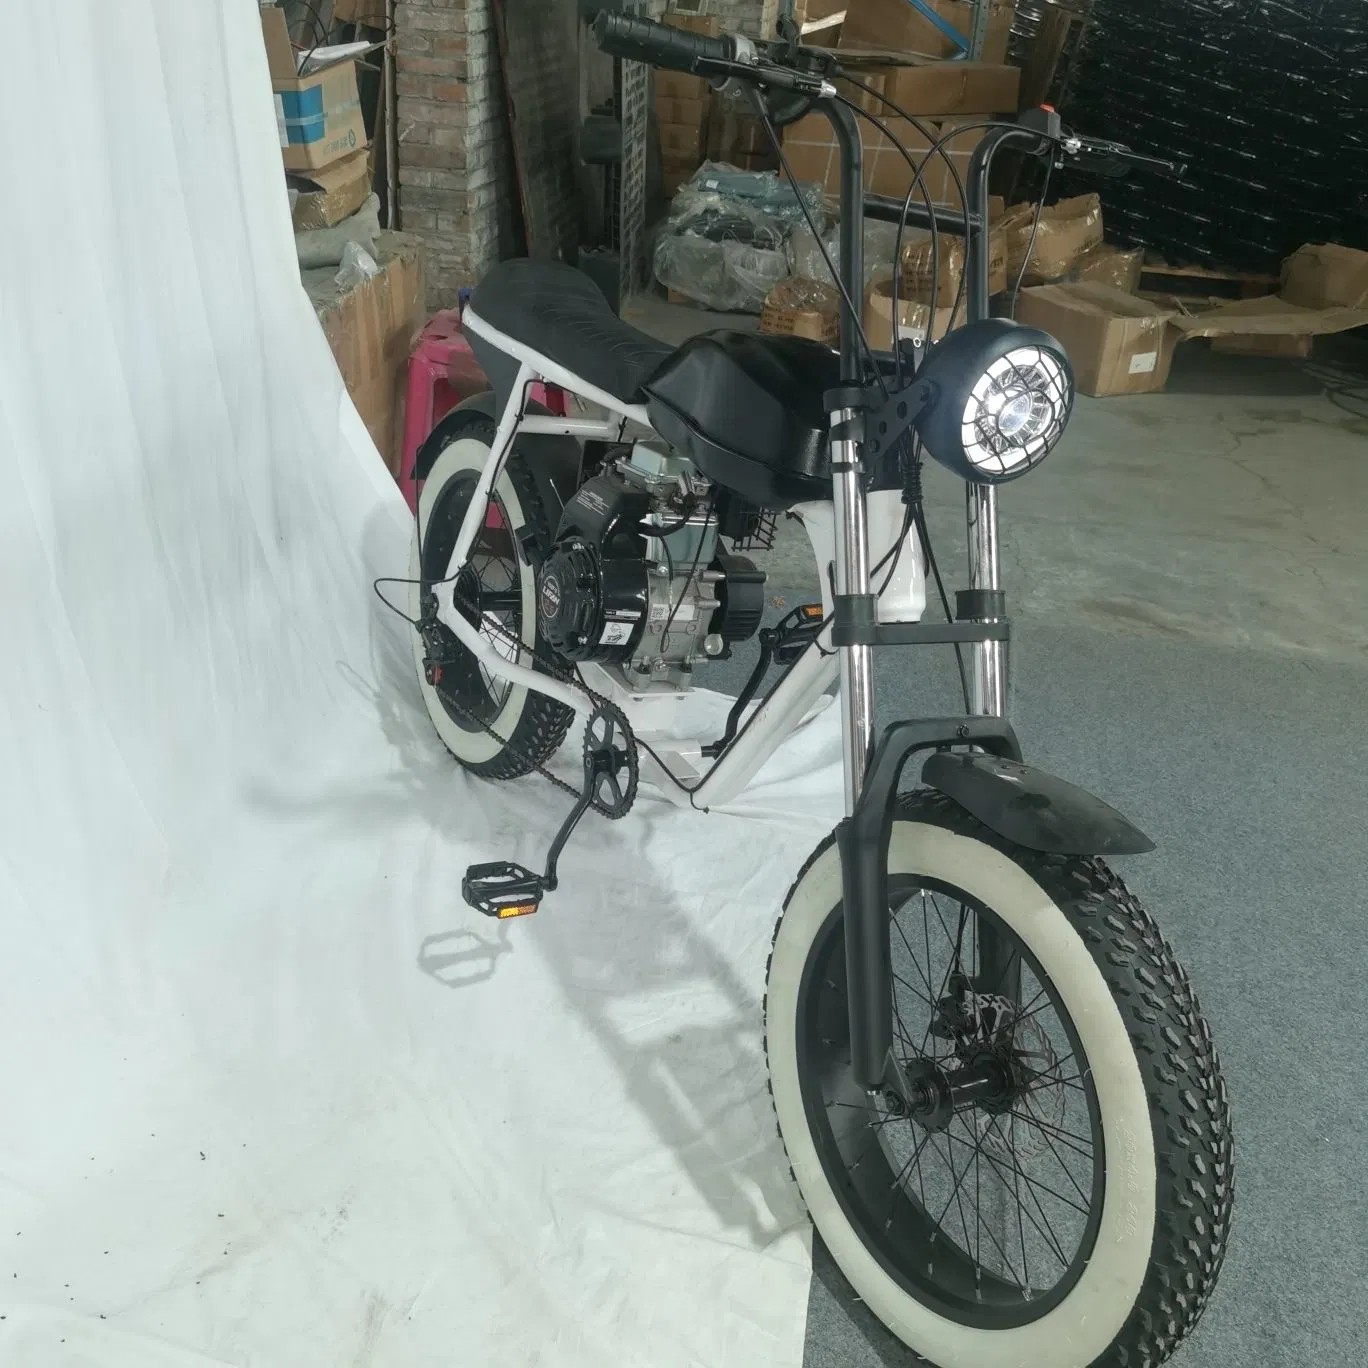 Suspensão completa e económica Retro Vintage e Bike DiRT Mountain Bicicleta elétrica de pneu gordo